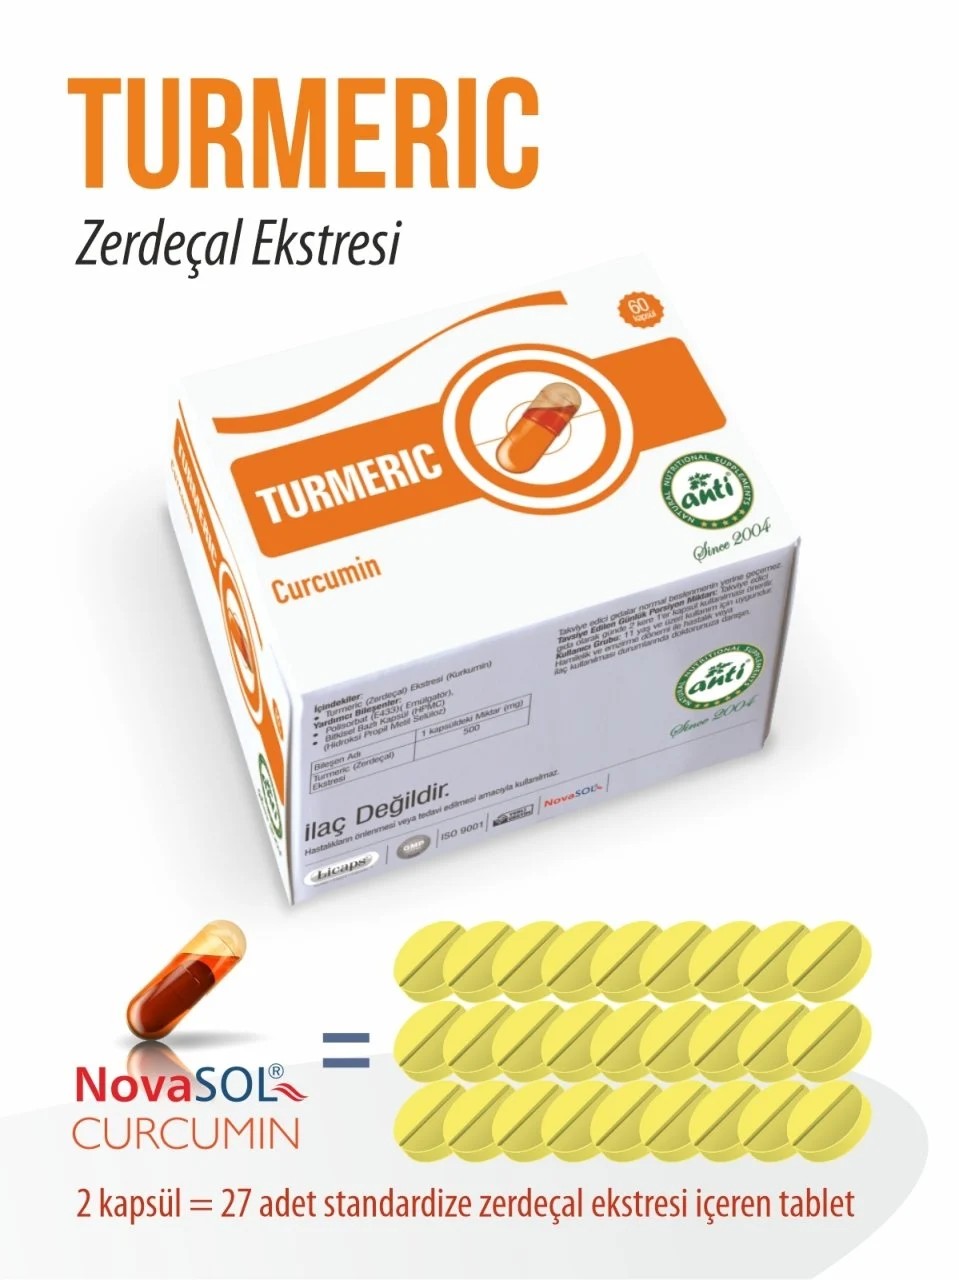 Zerdeçal Ekstresi Turmeric Extract Licaps Novasol